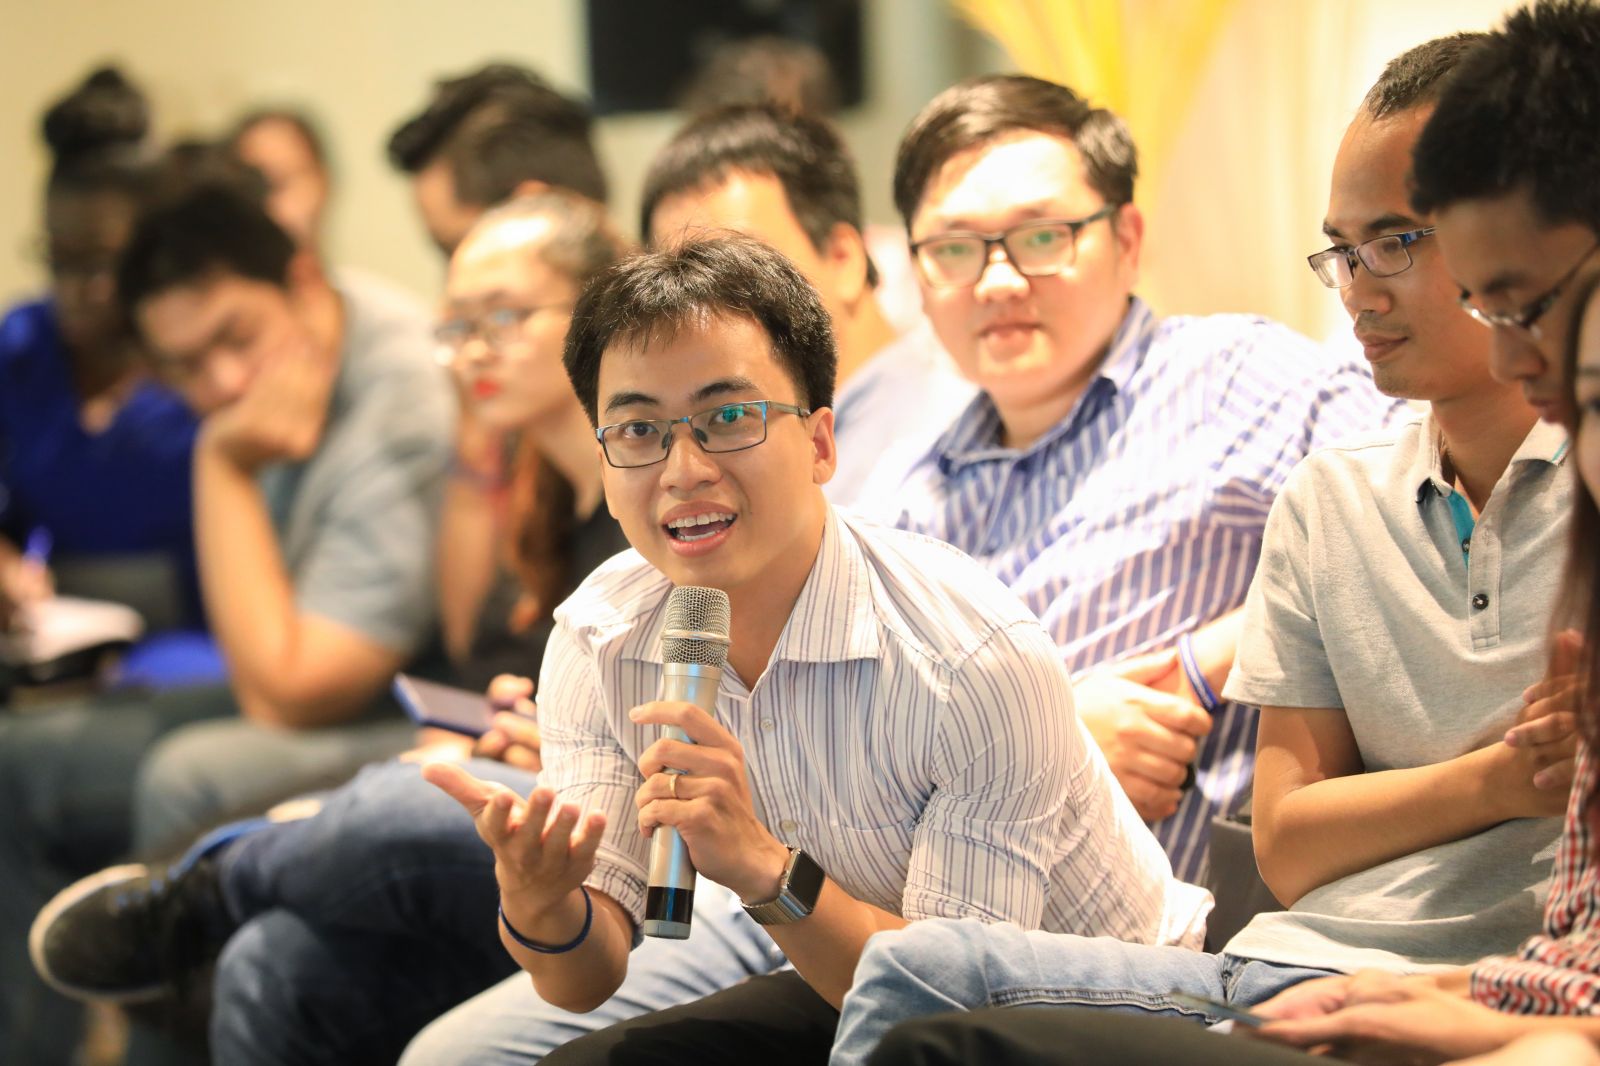 Bùi Hải Nam trình bày dự án tại buổi workshop chủ đề "Go Global" trong khuôn khổ Startup Việt 2018.